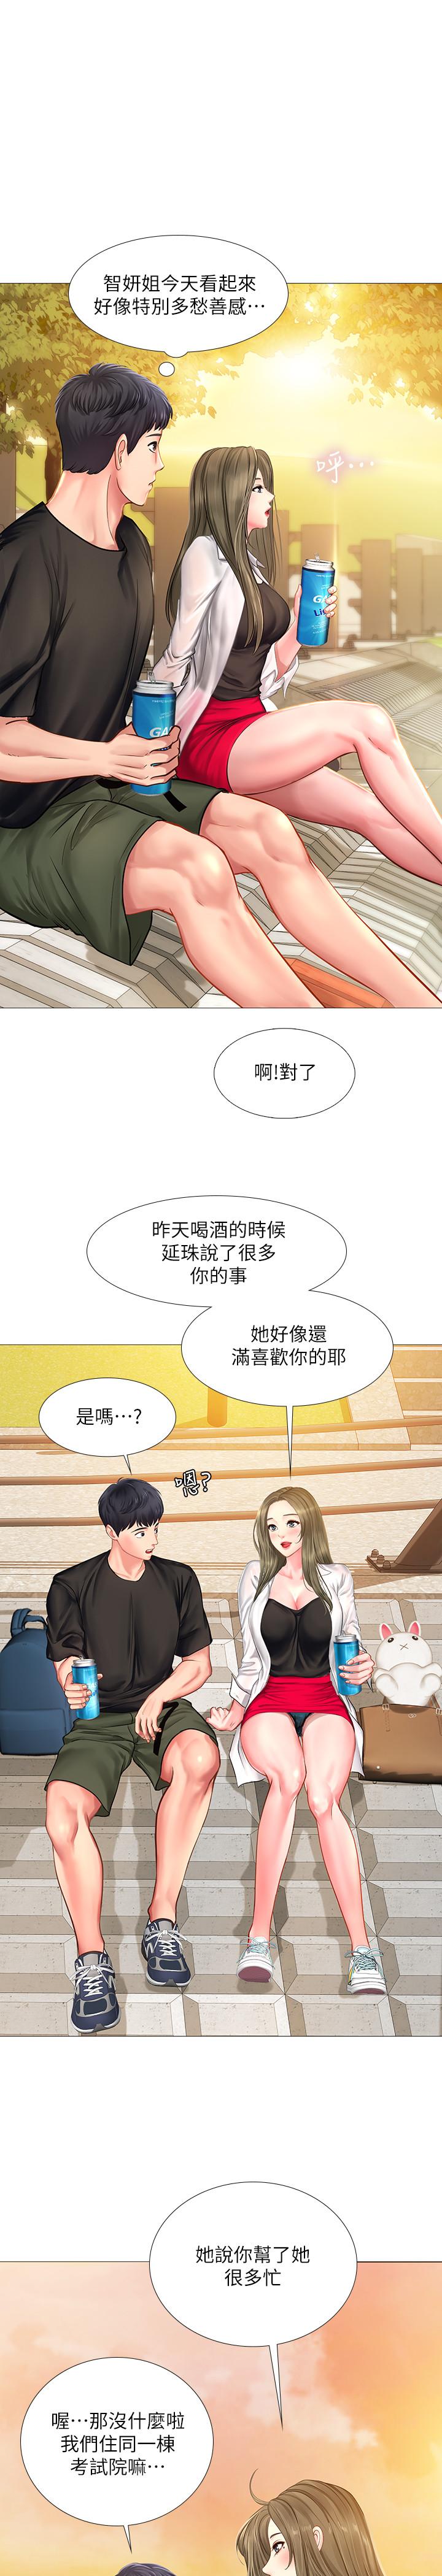 韩国污漫画 享樂補習街 第24话-和智妍姐初次约会 30